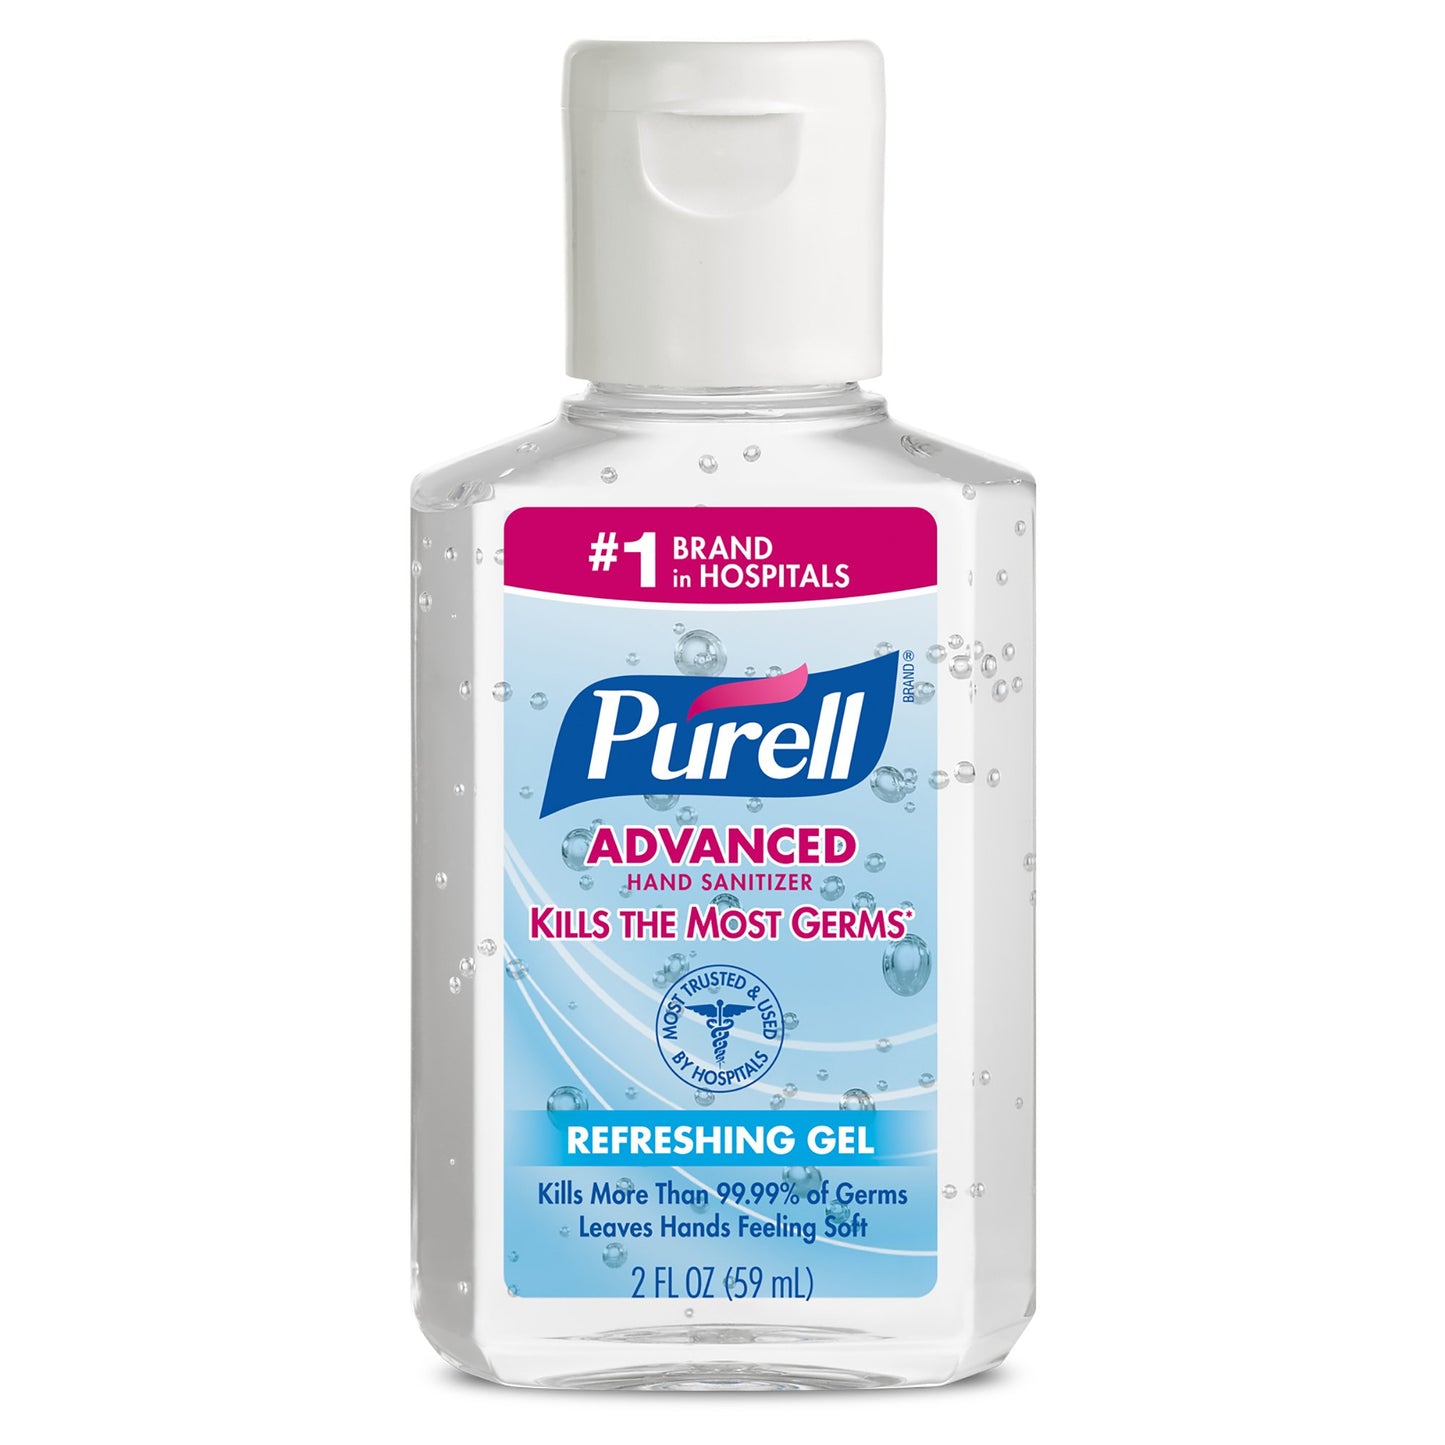 Purell Advanced Hand Sanitizer Gel Bottle 2 oz.